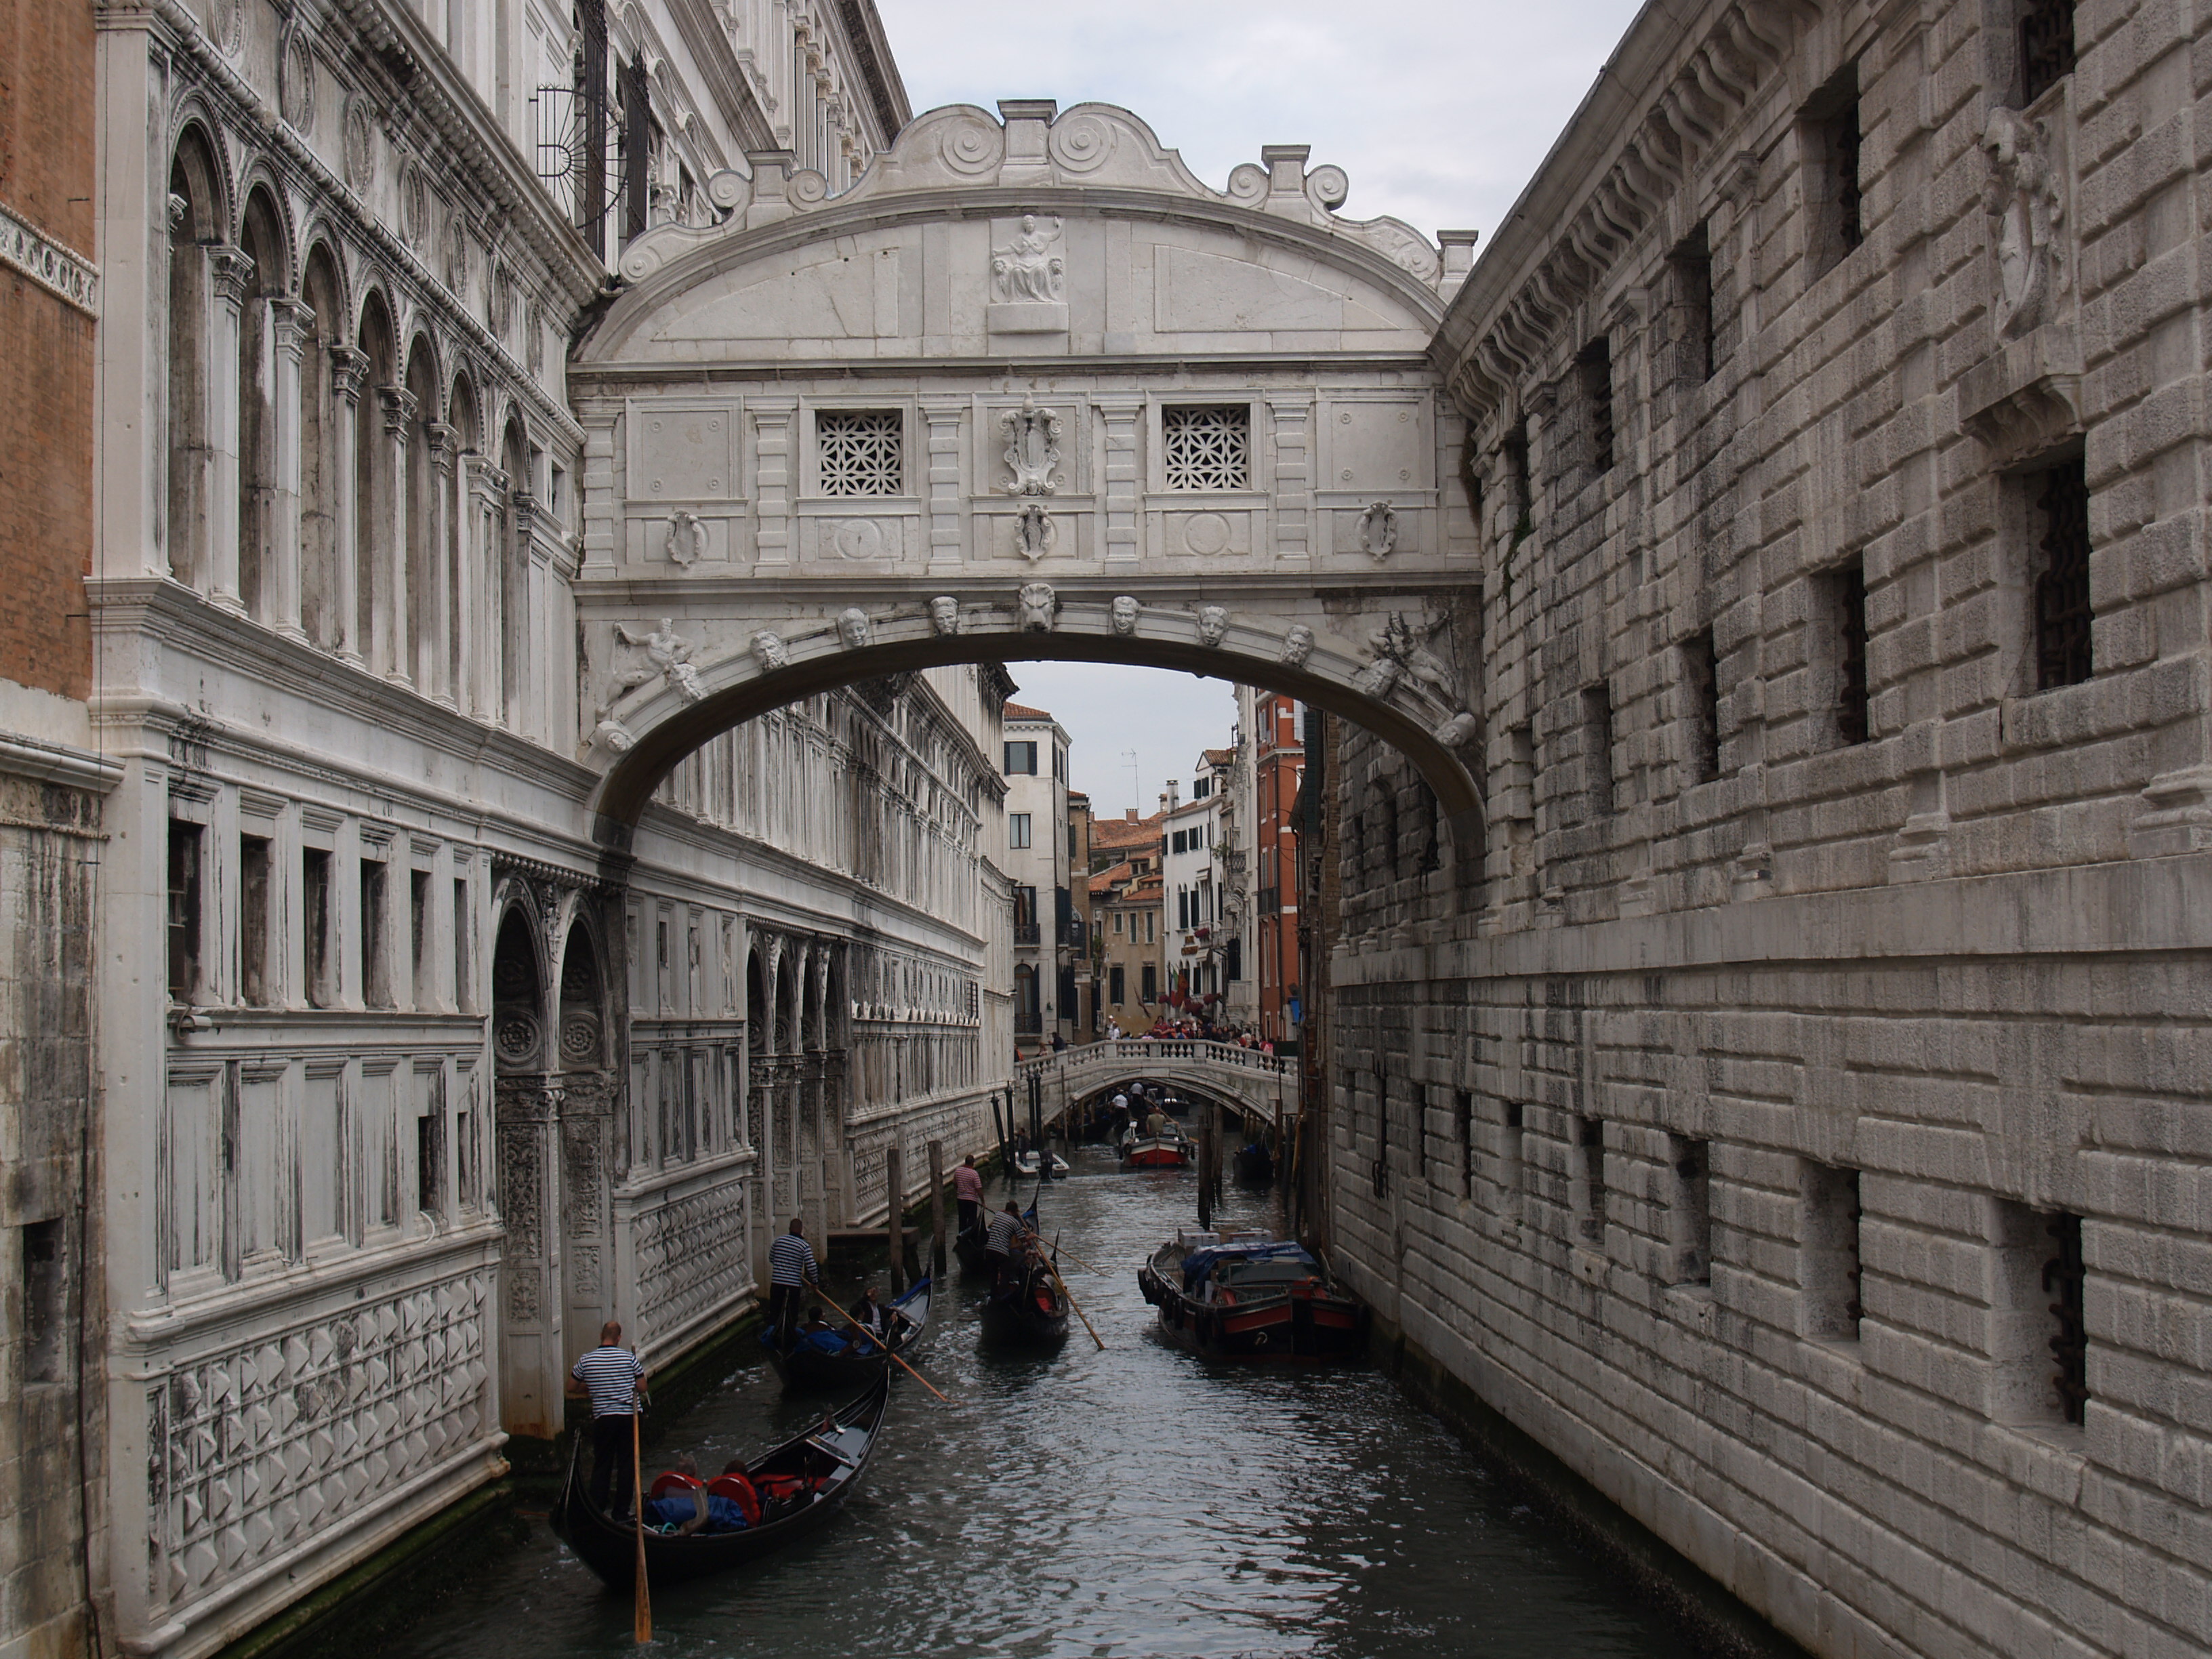 Venice Bridge of Sighs